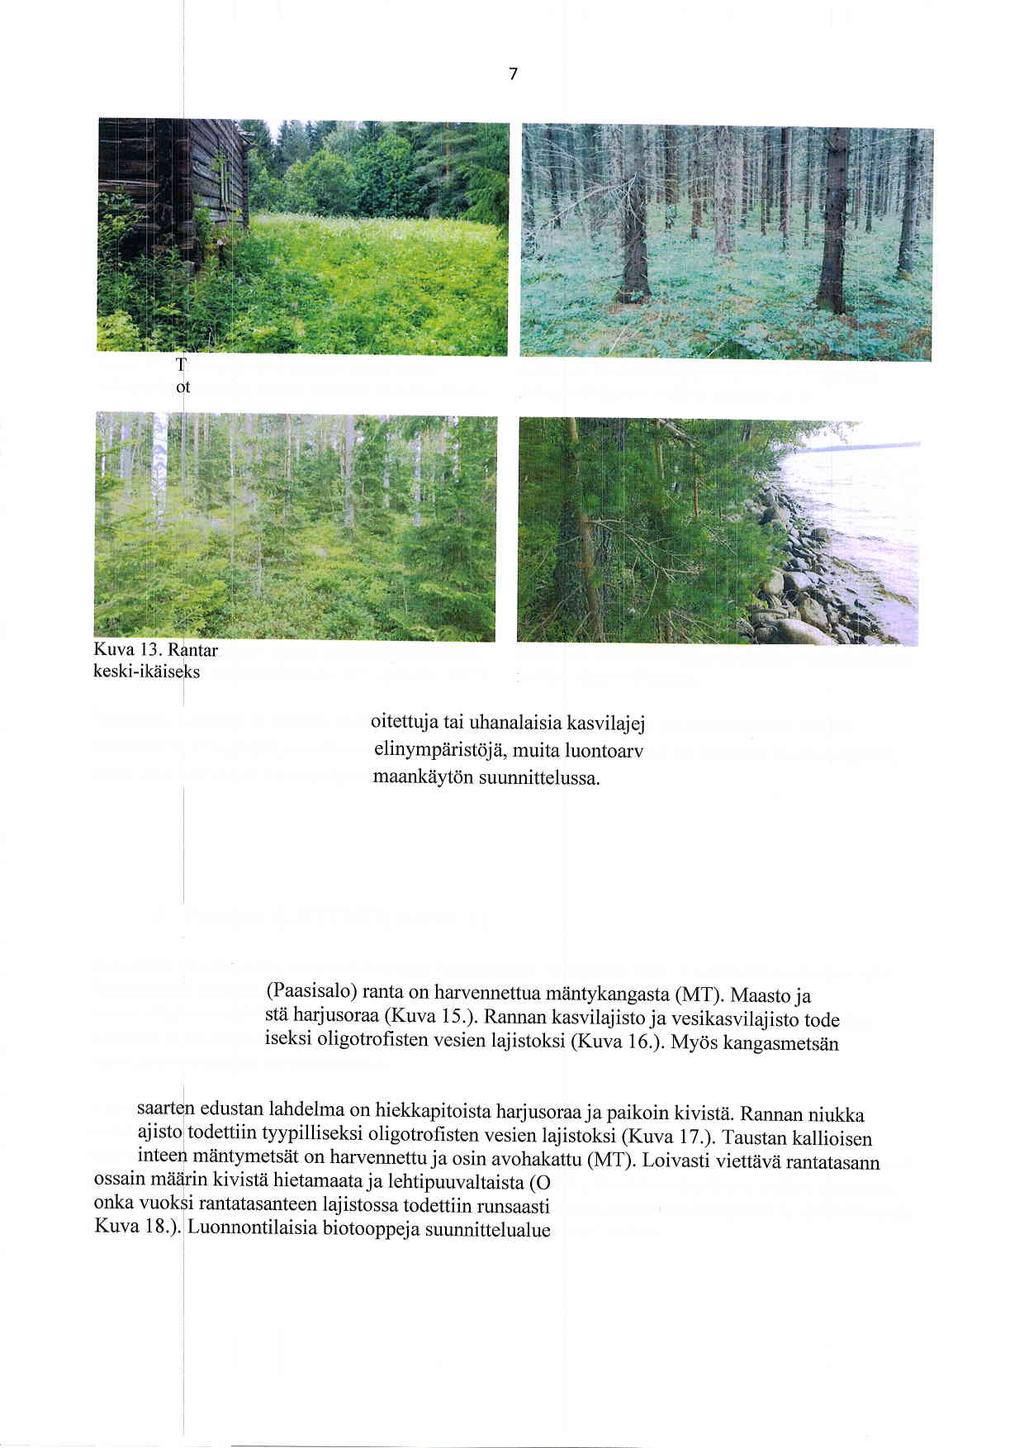 Kuva 11. kulttuuribi ilan piiiirakennuksen ympliriston ooppien lajisto todettiin monipuoliseksi. Kuva 12. Suunnittelualueen pellot on metsitetty.